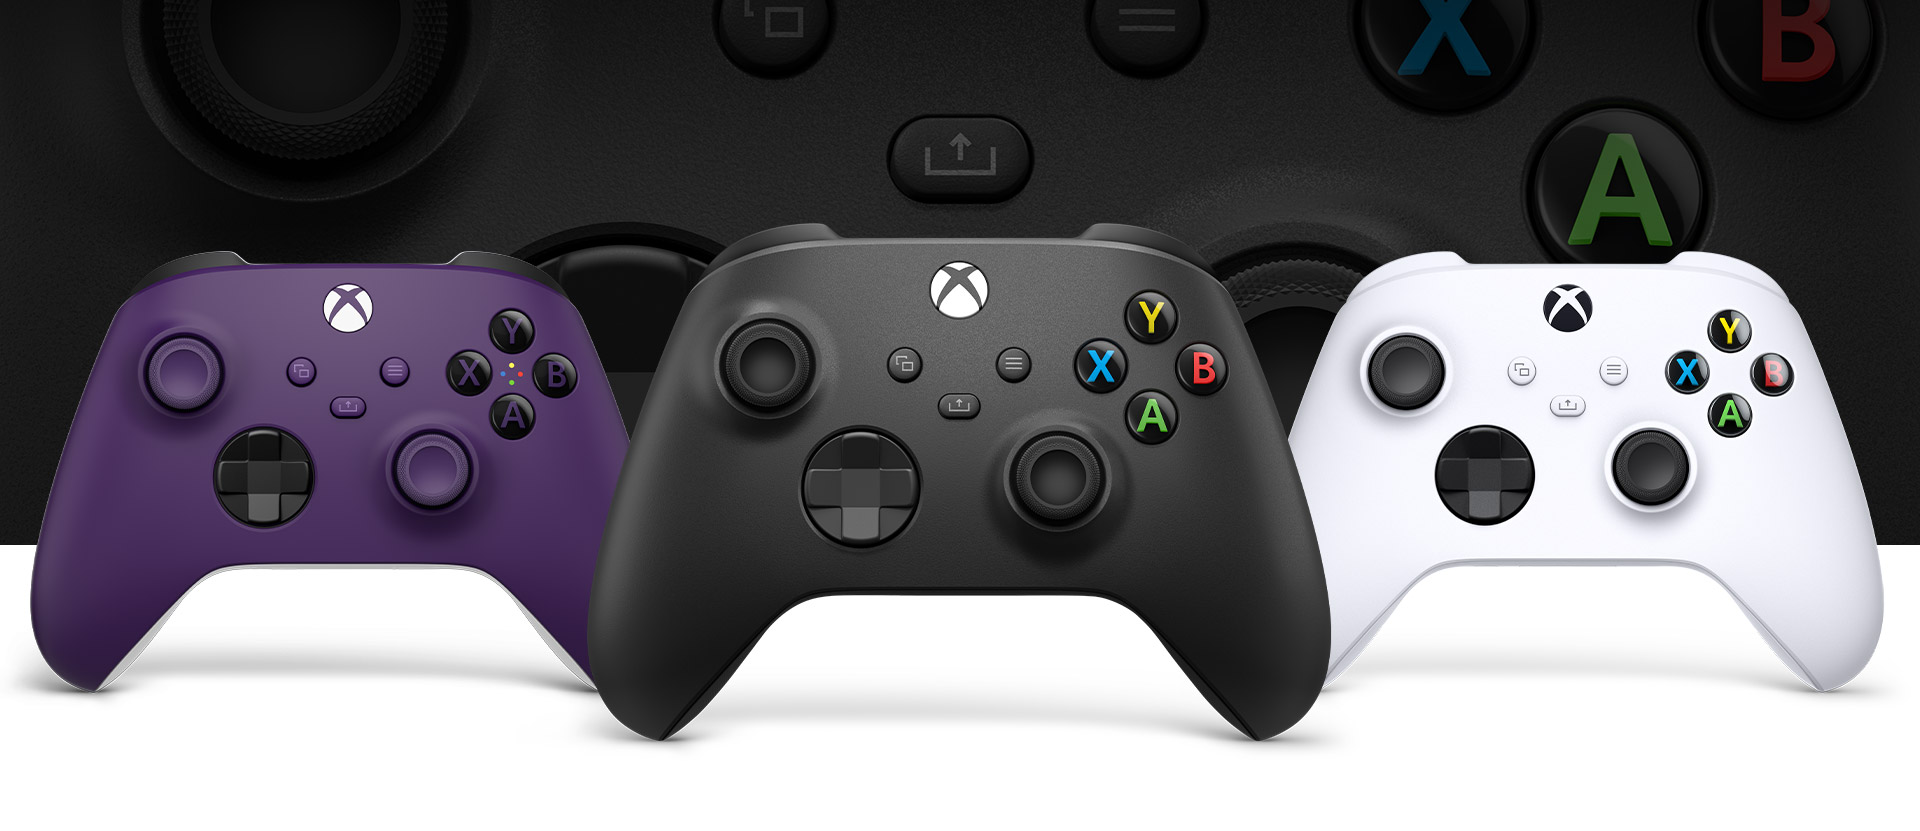 Mando Xbox en negro carbón delante, con un mando de color púrpura a la izquierda y un mando de color blanco robot a la derecha